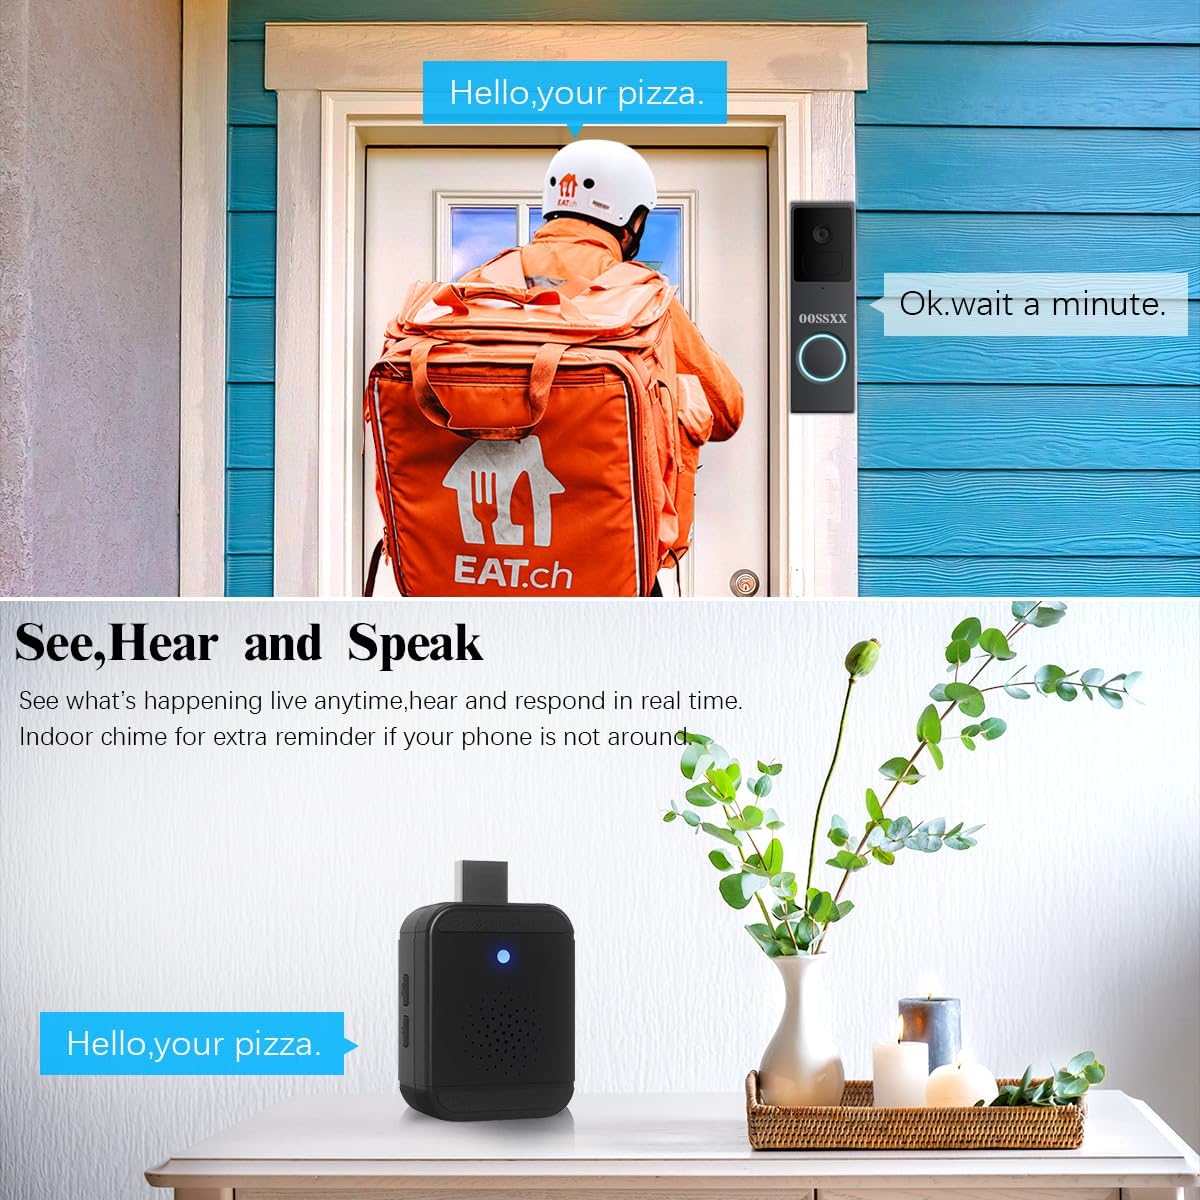 Smart Outdoor Camera and Smart Video Doorbell